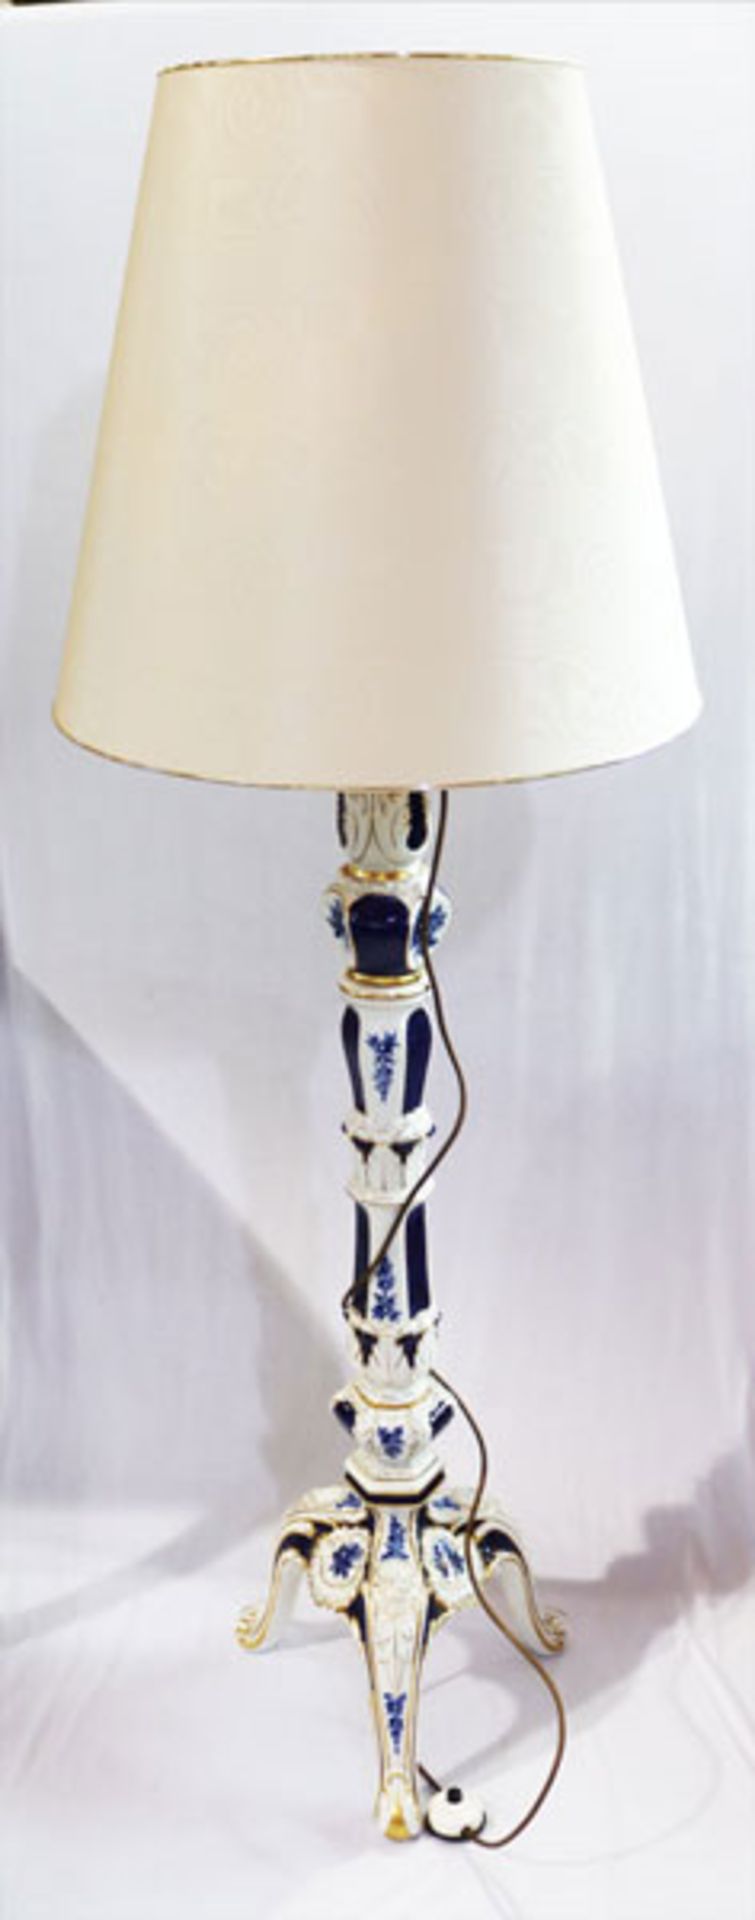 Plaue Porzellan Stehlampe mit blau/goldenem Dekor und beigen Schirm, H 171 cm, D 60 cm, Funktion